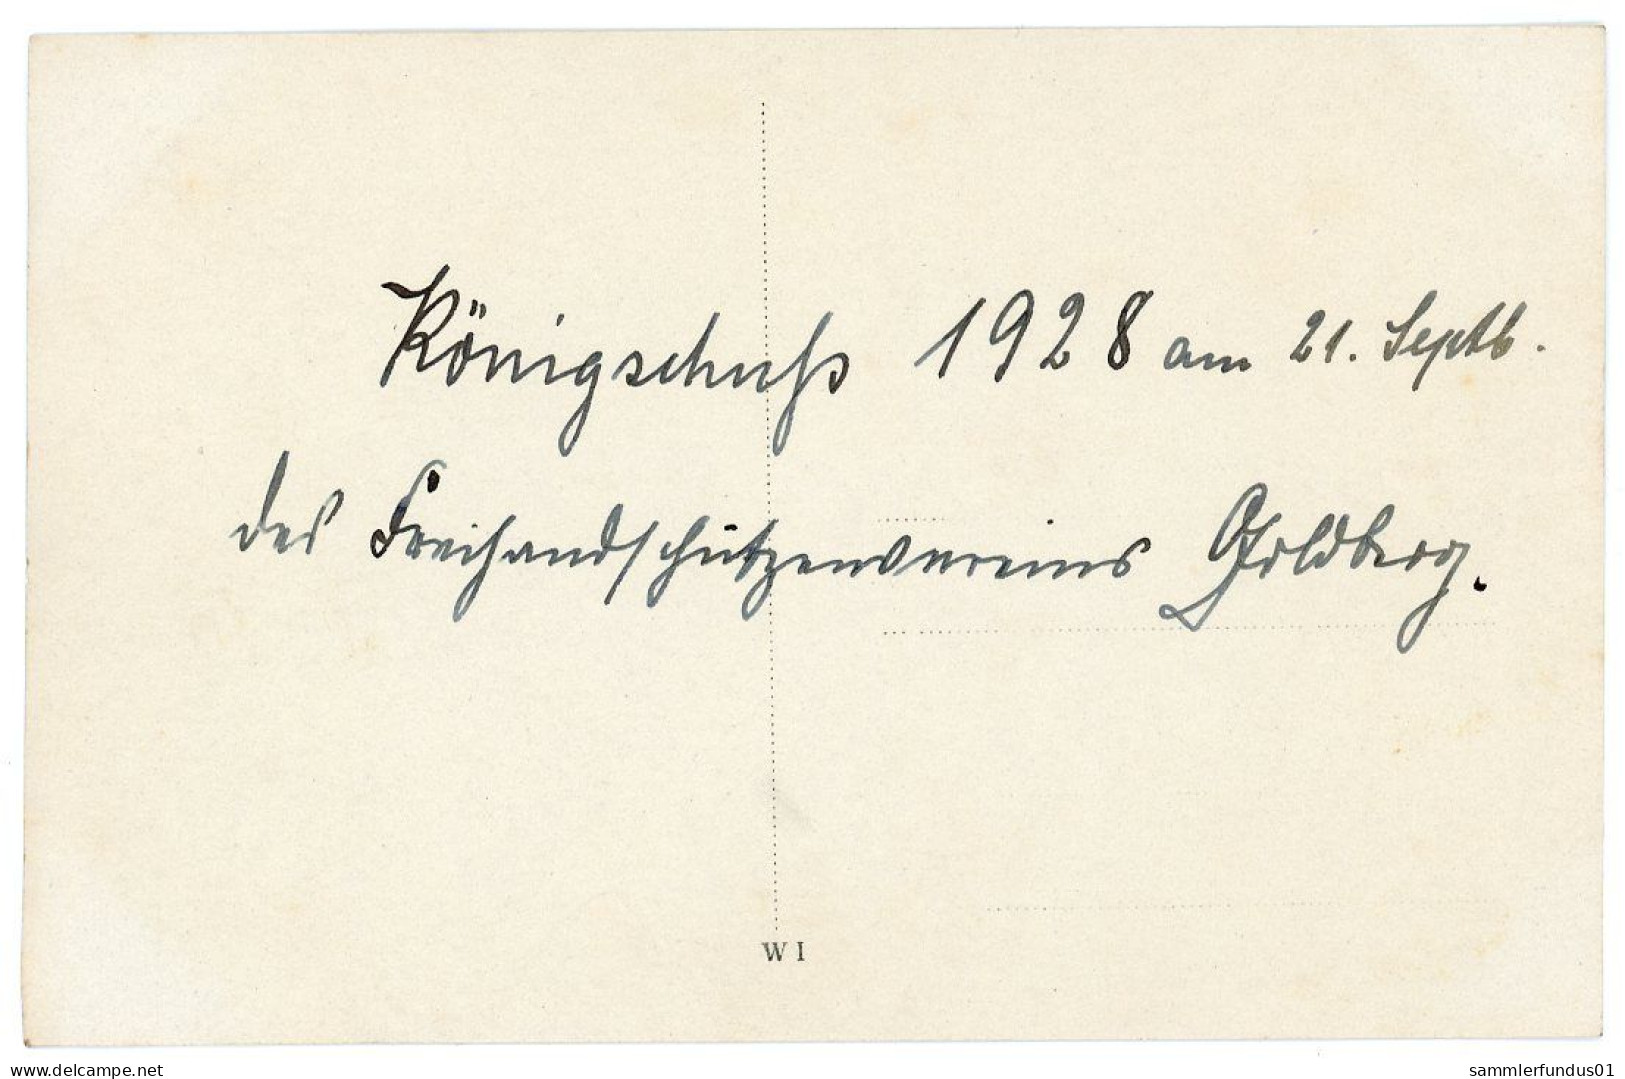 Foto AK/CP Goldberg  Freihand Schützenverein  Königschuß  Ungel/uncirc. 1928    Erhaltung/Cond. 1-   Nr. 1668 - Goldberg